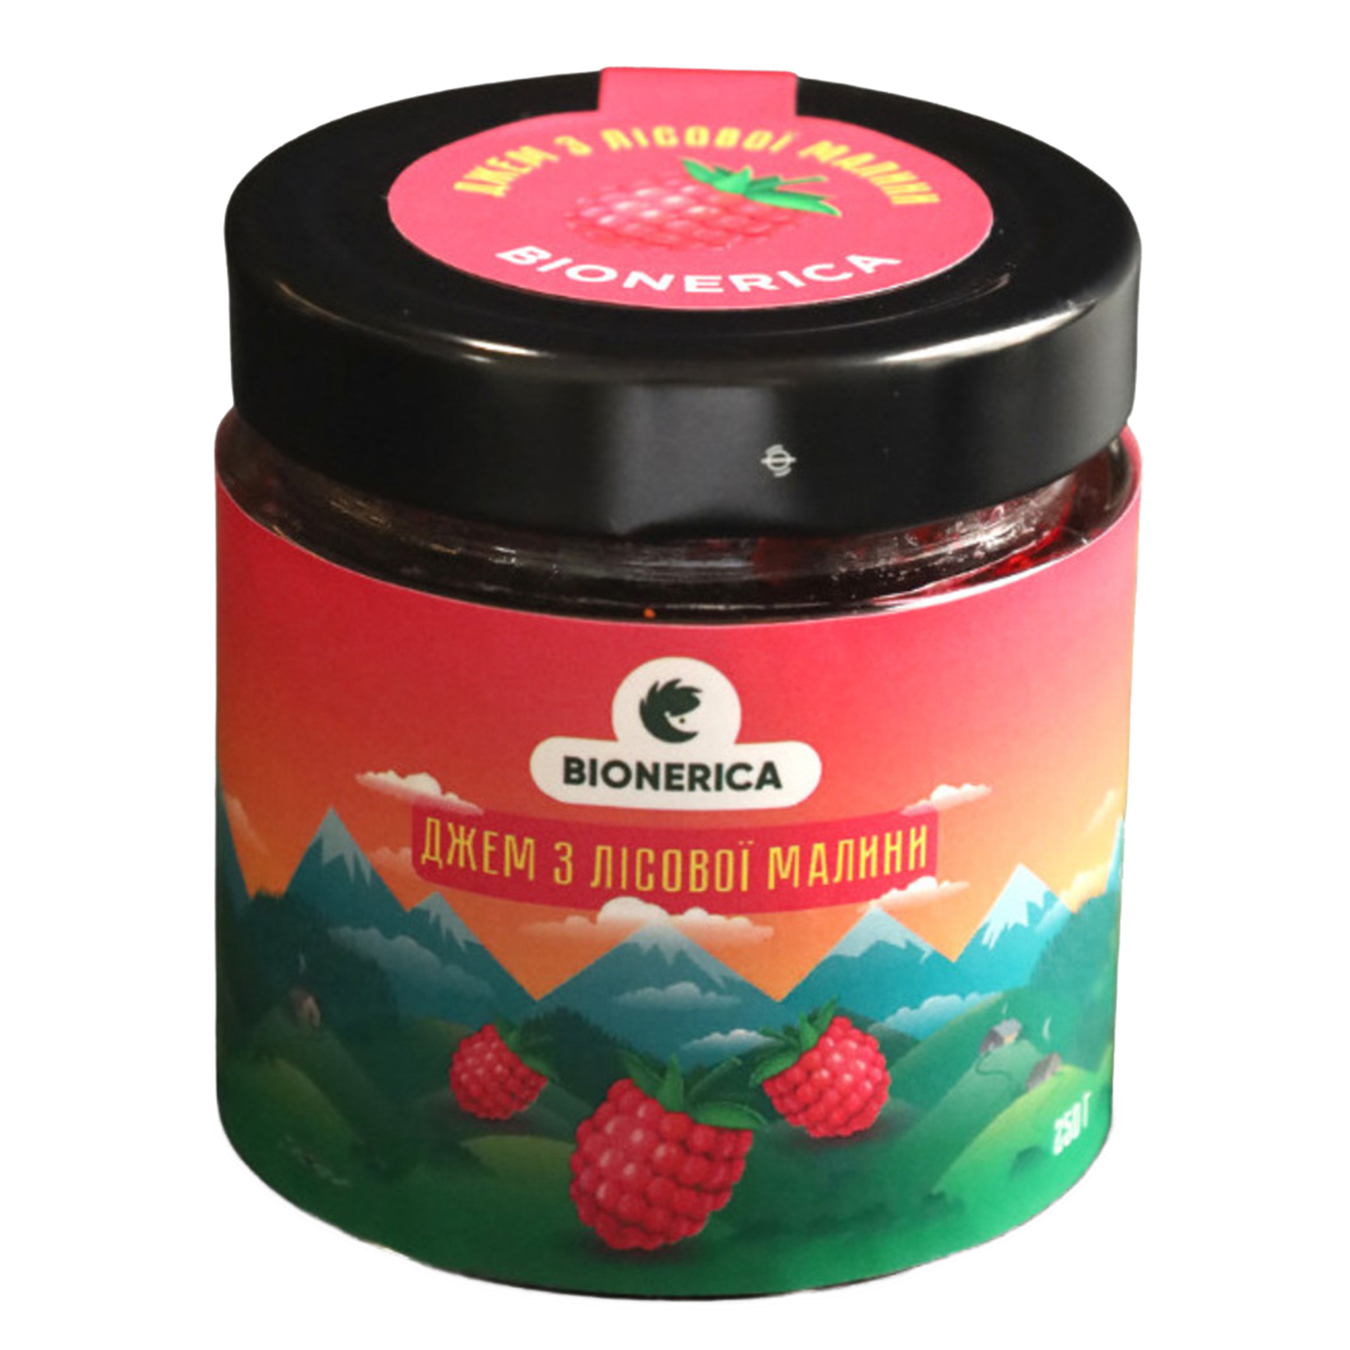 Bionerica jam from wild raspberries 250g